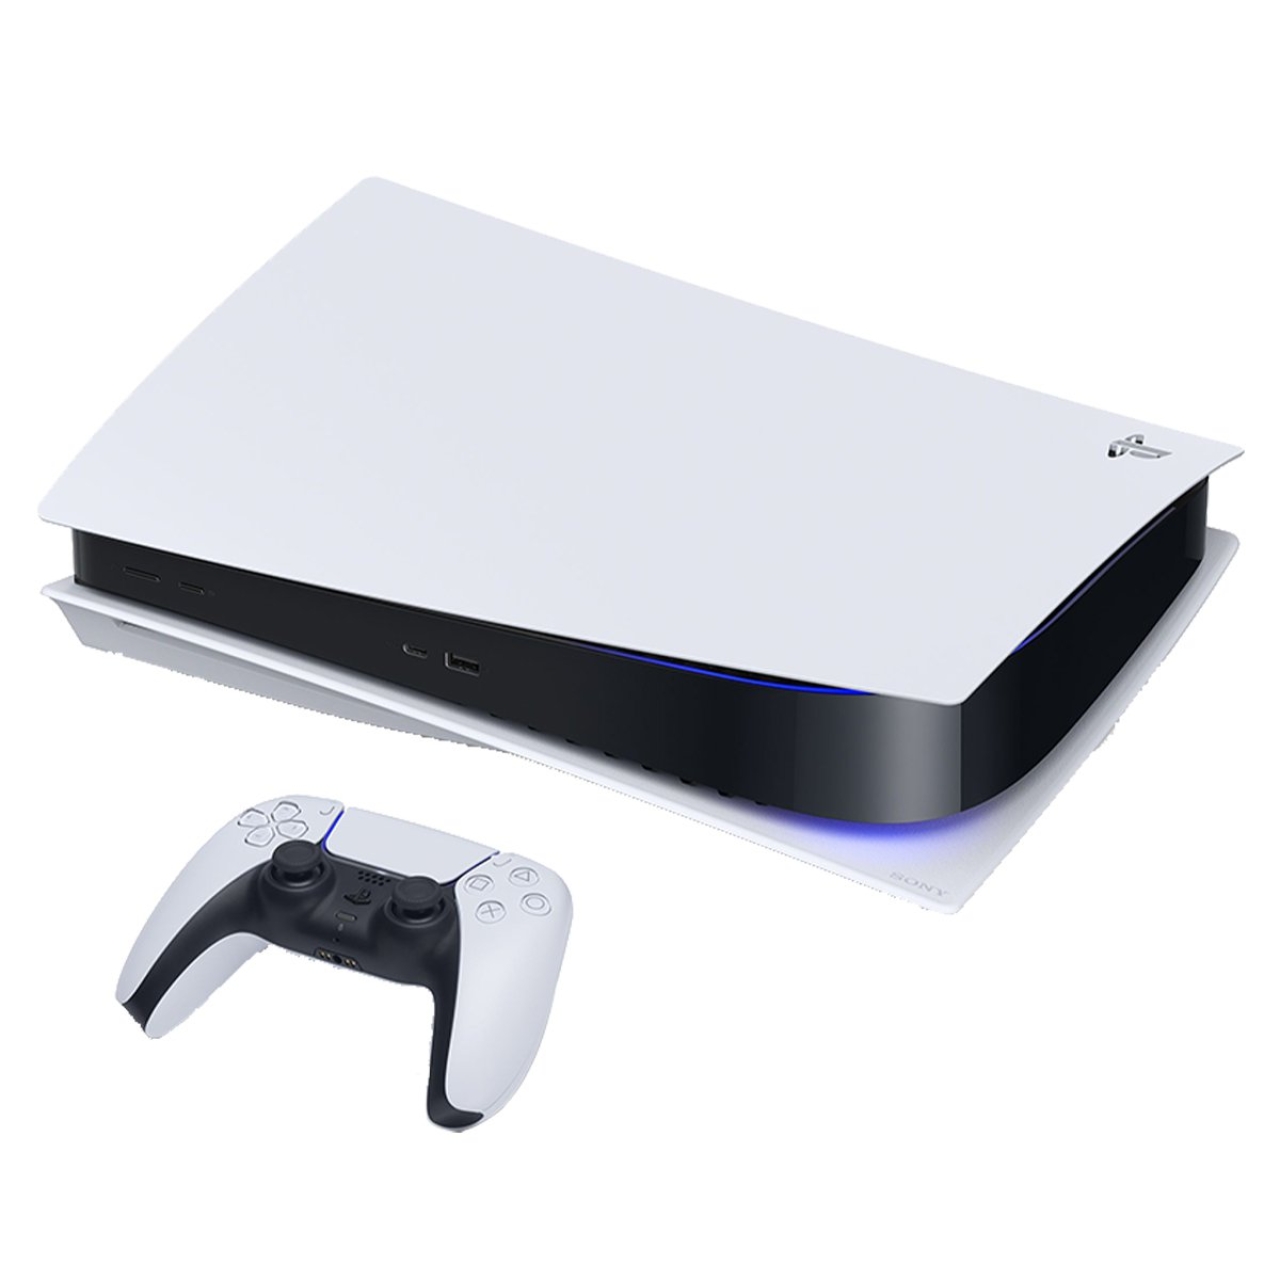 مجموعه کنسول بازی سونی مدل PlayStation 5 Drive ظرفیت 825 گیگابایت به همراه دسته و هدست و پایه شارژر